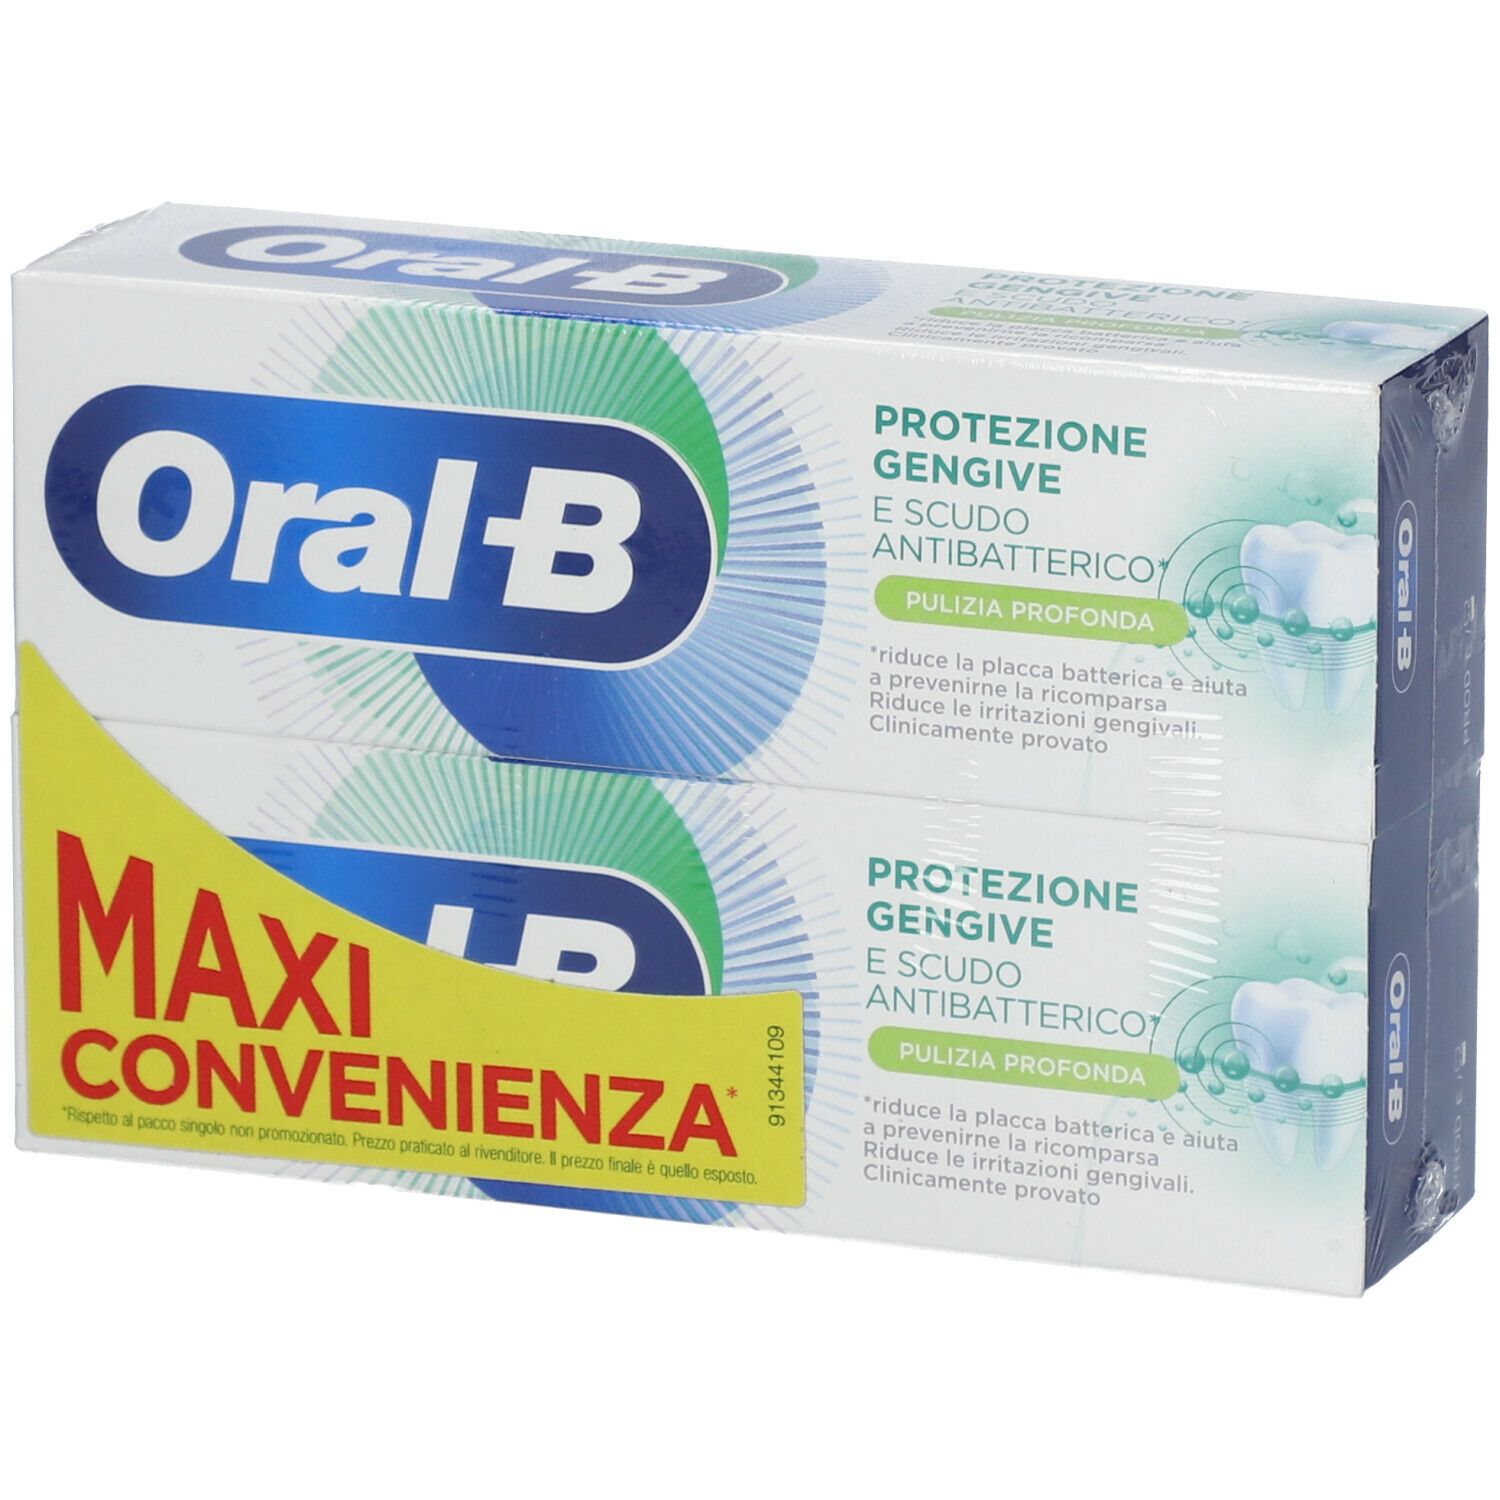 Image of Oral-B Protezione Gengive e Scudo Antibatterico Pulizia Profonda